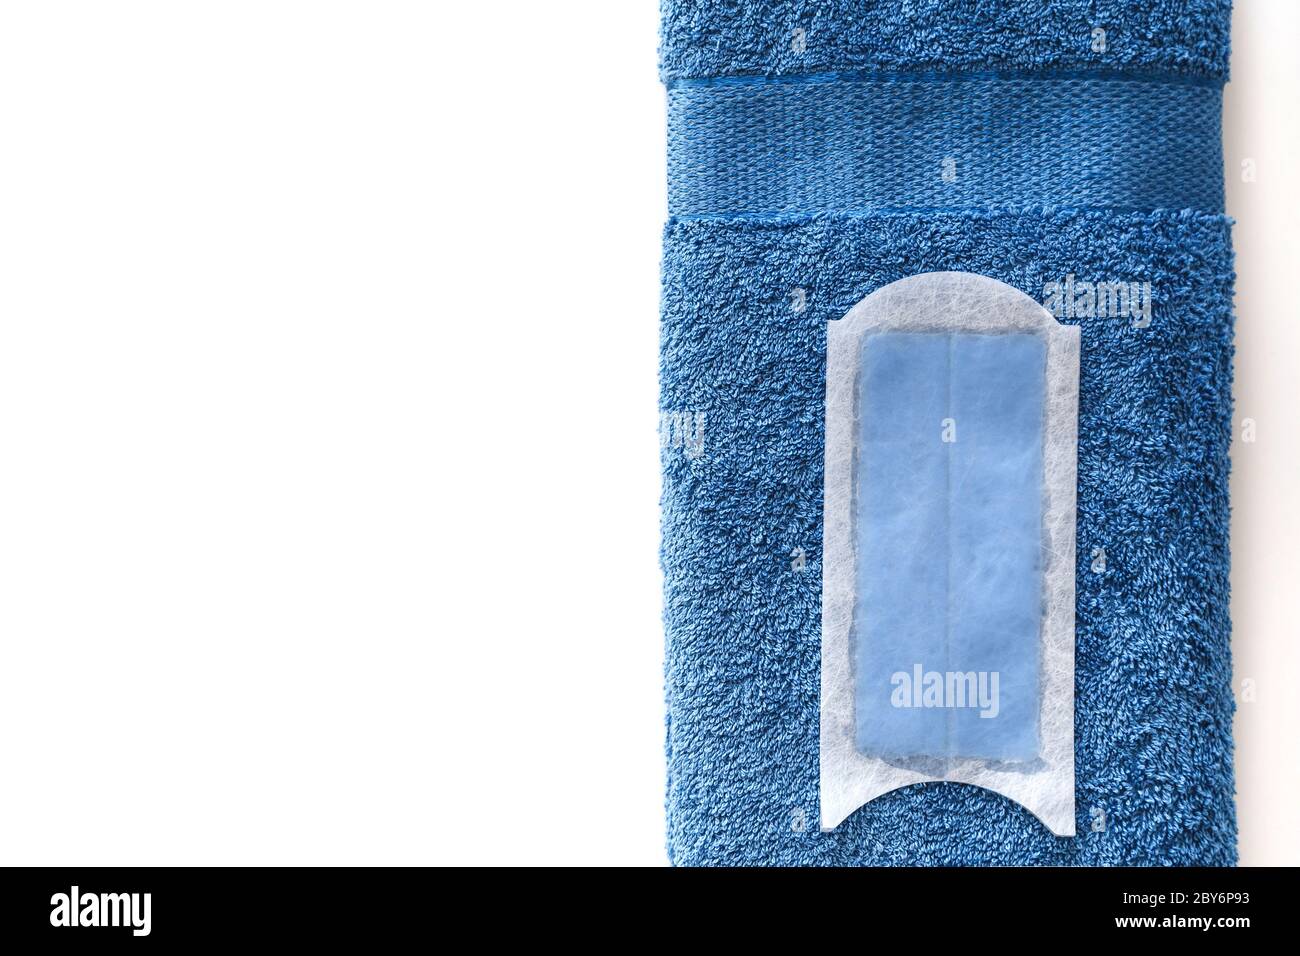 Bande de cire jetable pour l'épilation, sur une serviette en coton bleu isolée sur du blanc. Vue de dessus. Banque D'Images